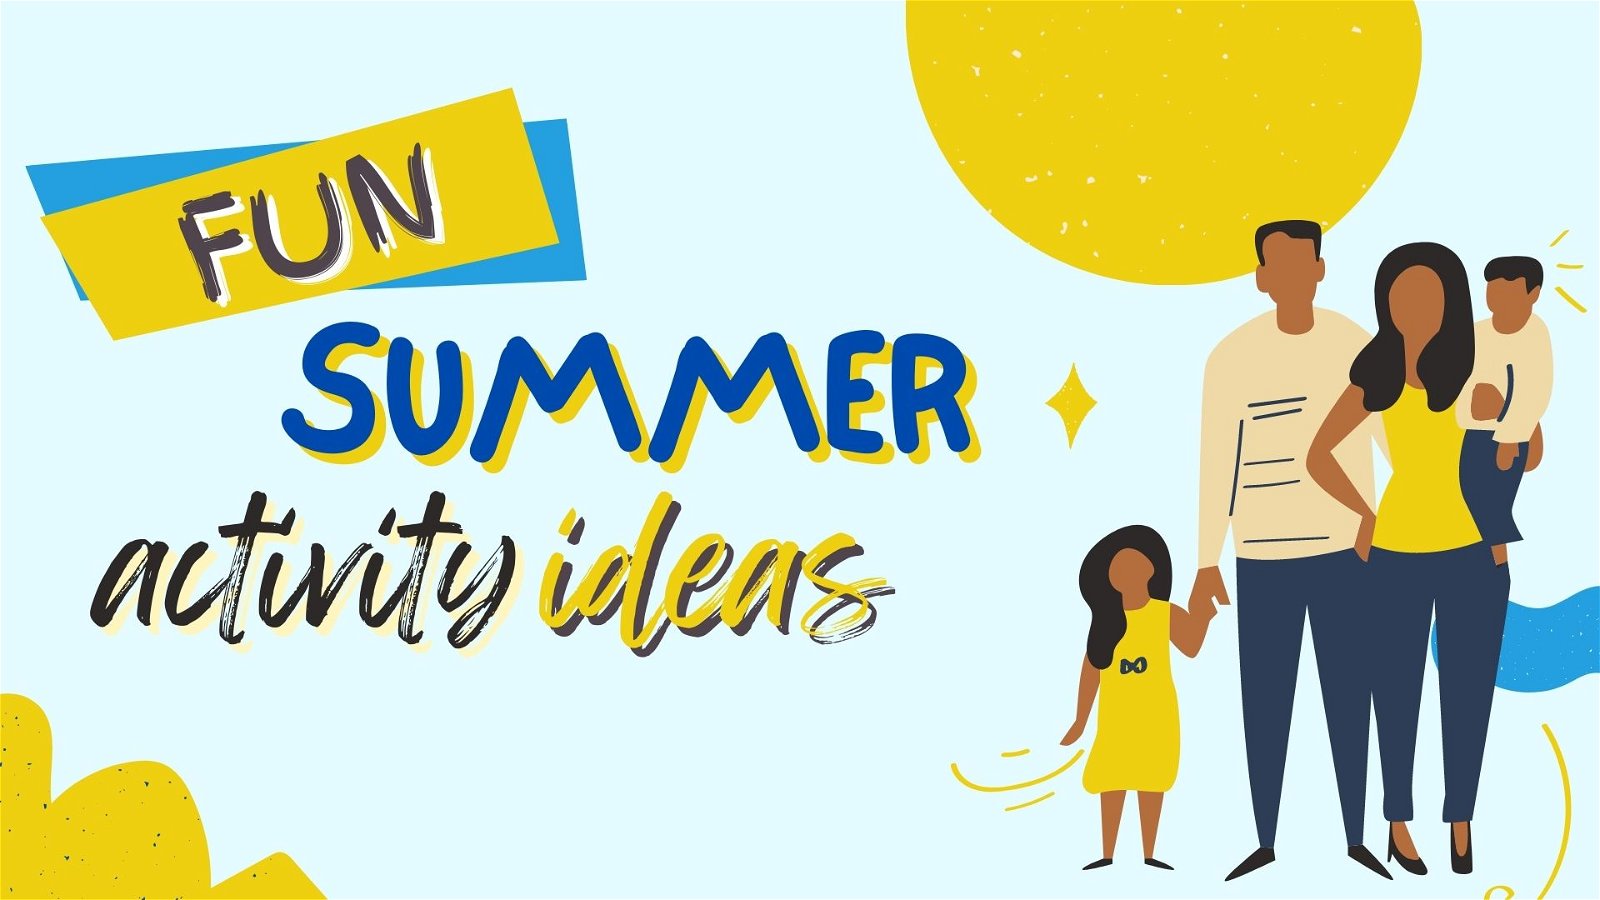 Fun Summer Activity Ideas